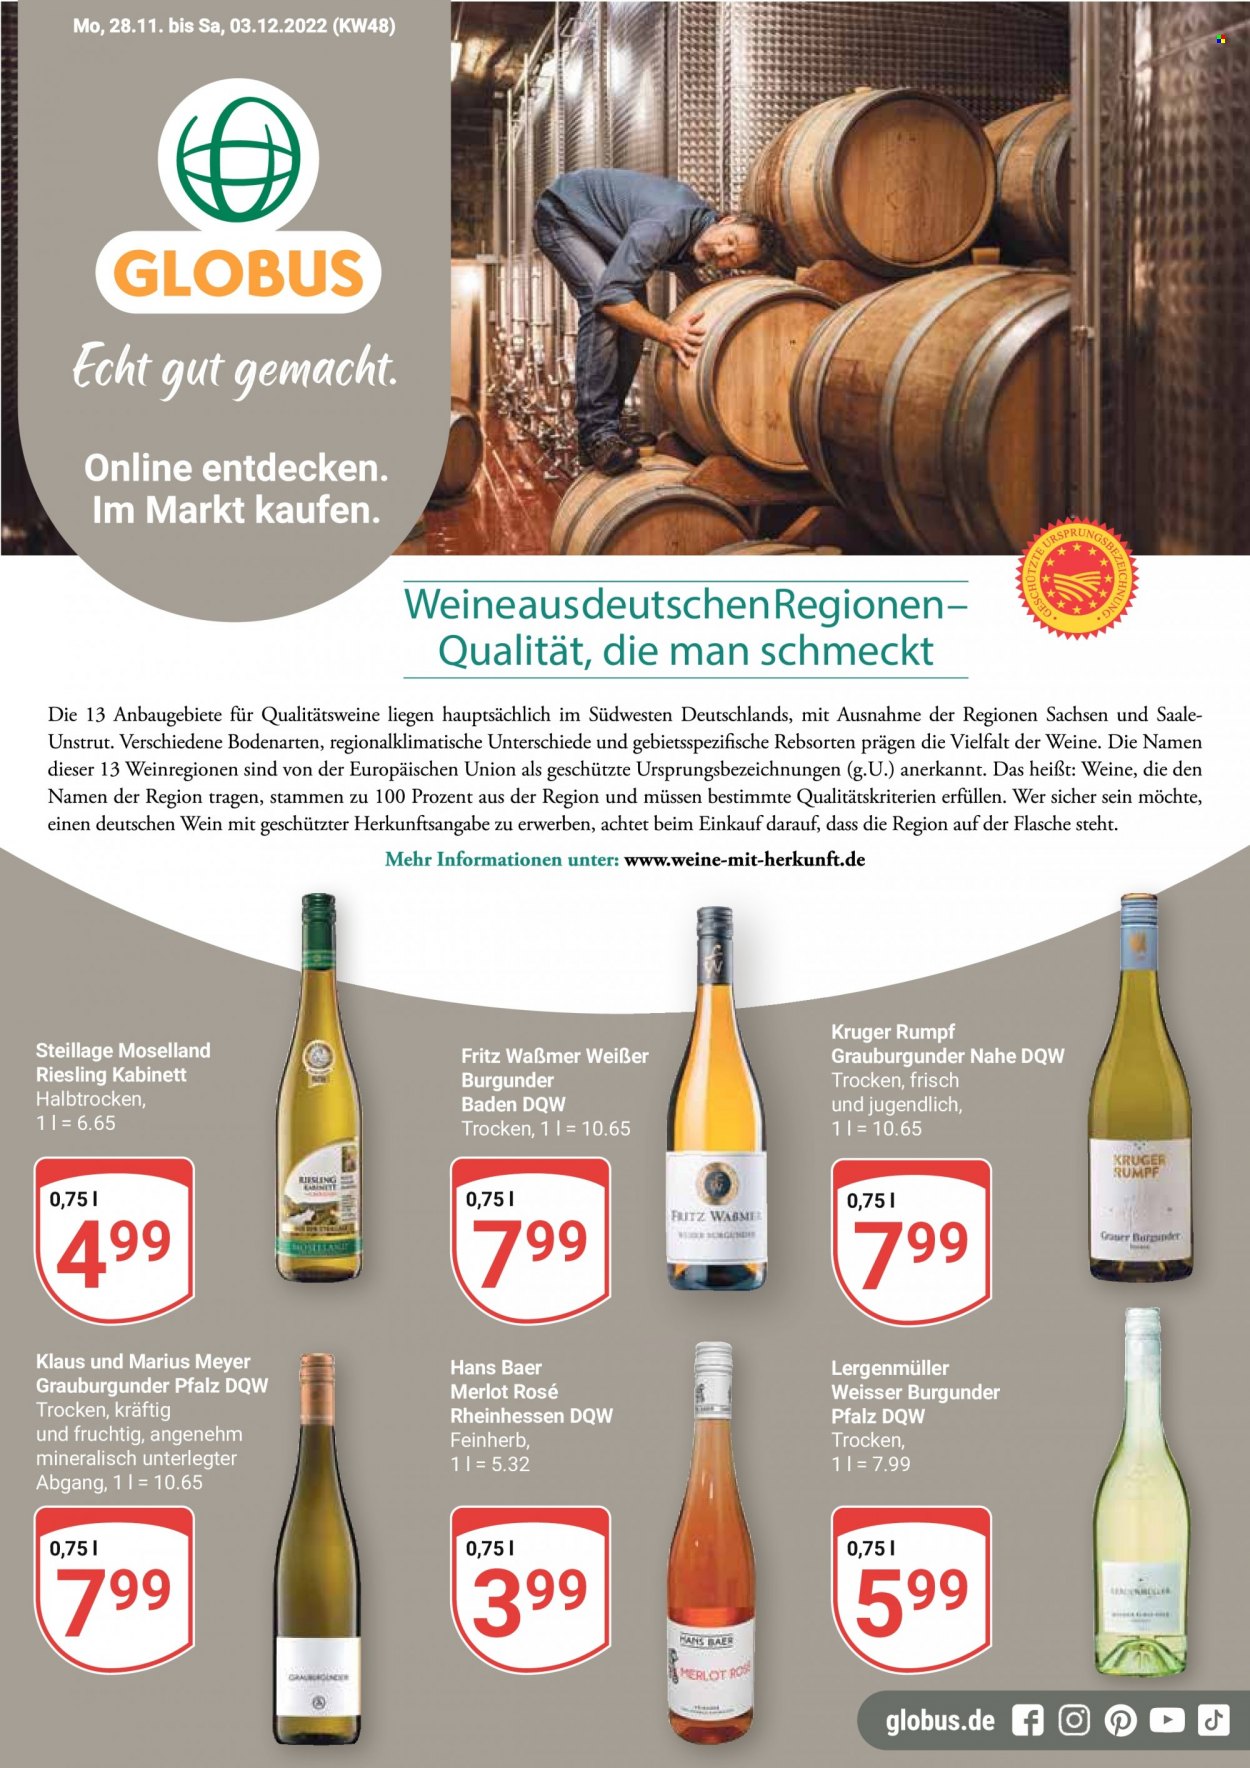 thumbnail - Prospekte Globus - 28.11.2022 - 3.12.2022 - Produkte in Aktion - Alkohol, Wein, Riesling, Merlot, Burgunder, Weißburgunder, Grauburgunder, Kabinett. Seite 1.